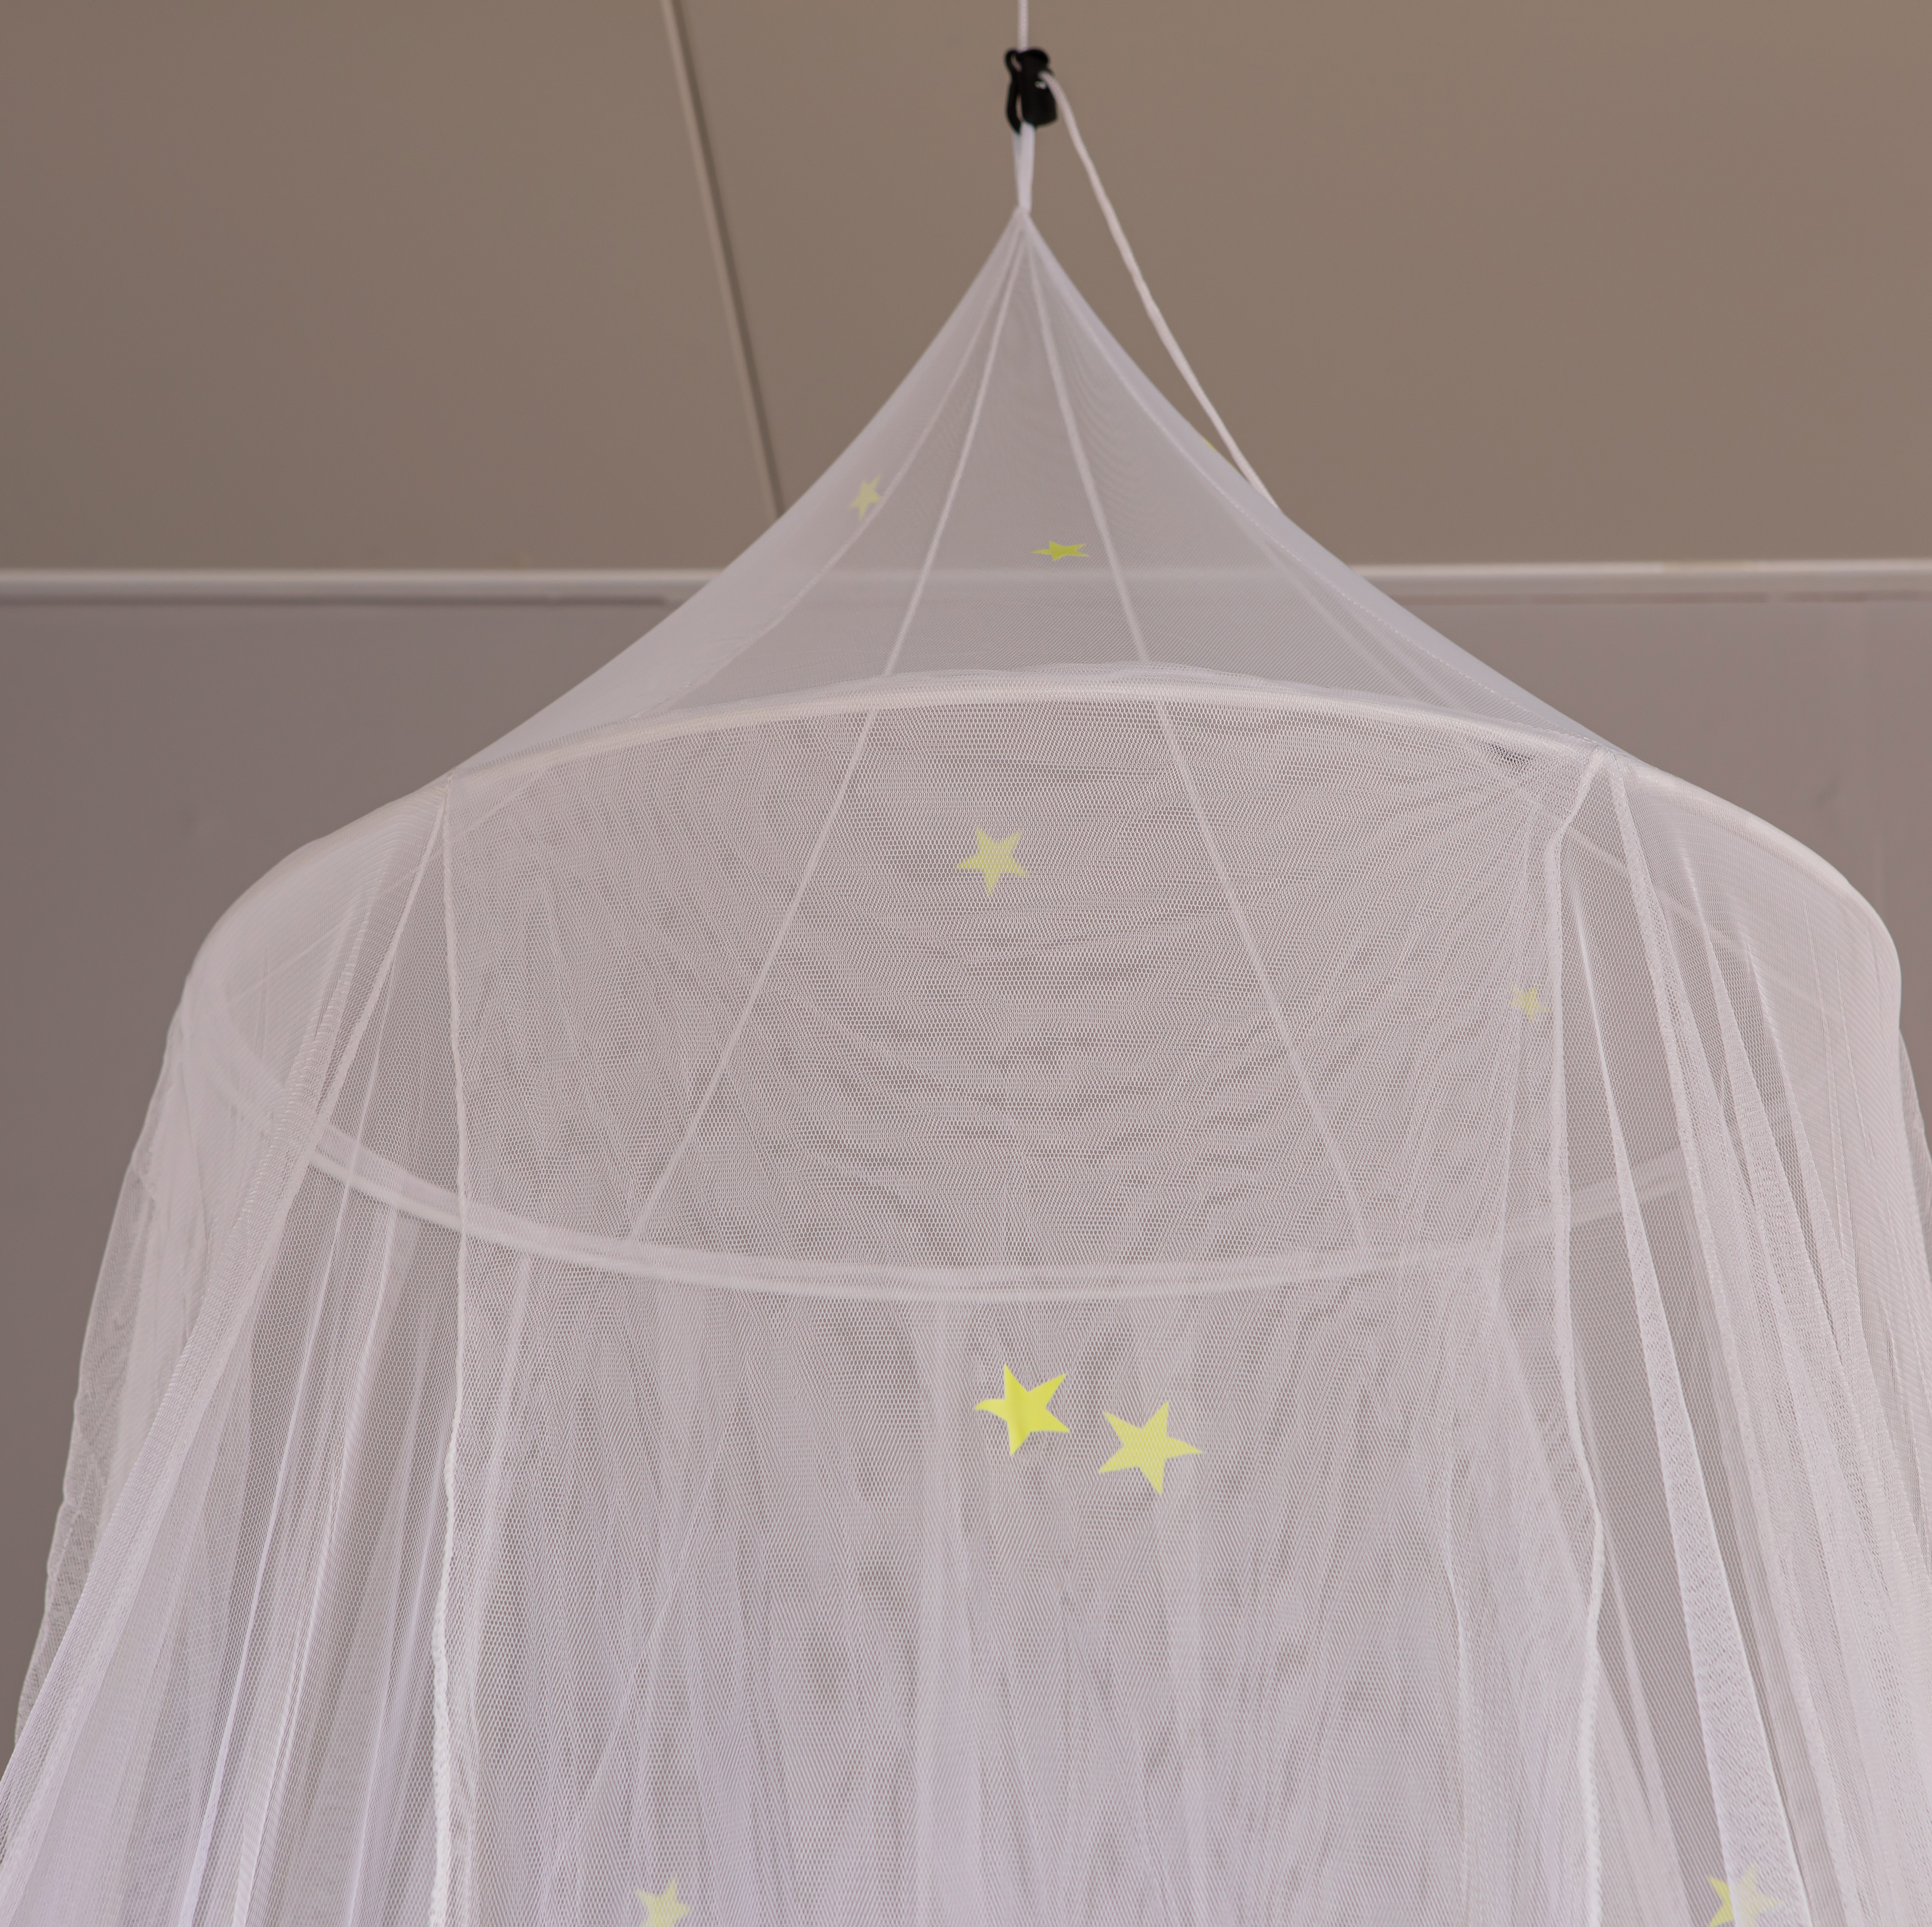 Neues Design Bed Canopy Moskitonetz mit fluoreszierenden Sternen im Dunkeln leuchten für Kinder